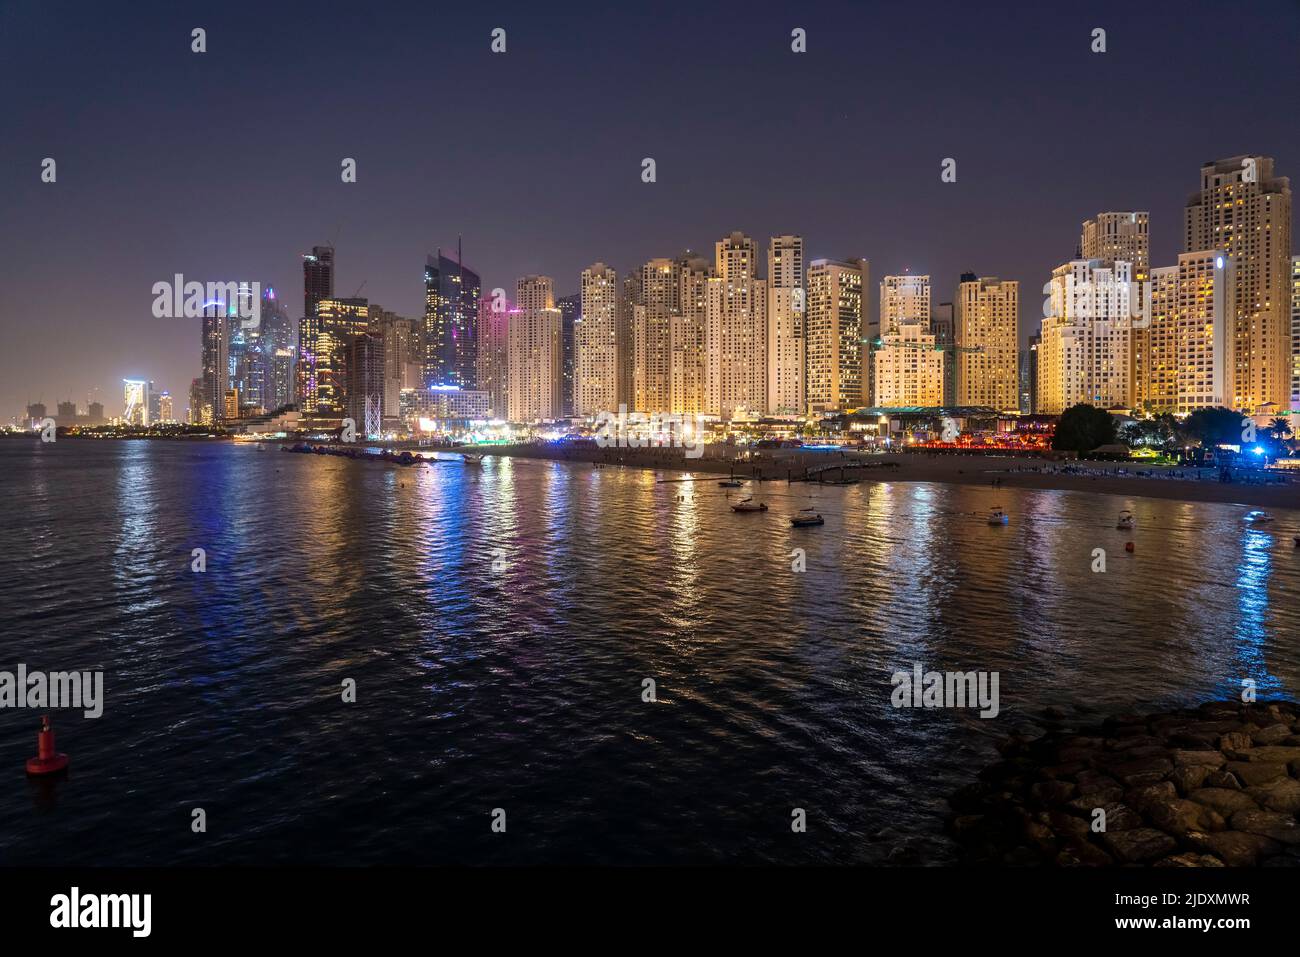 United Arab Emirates, Dubai, Skyline of illuminated coastal apartments at night Stock Photo